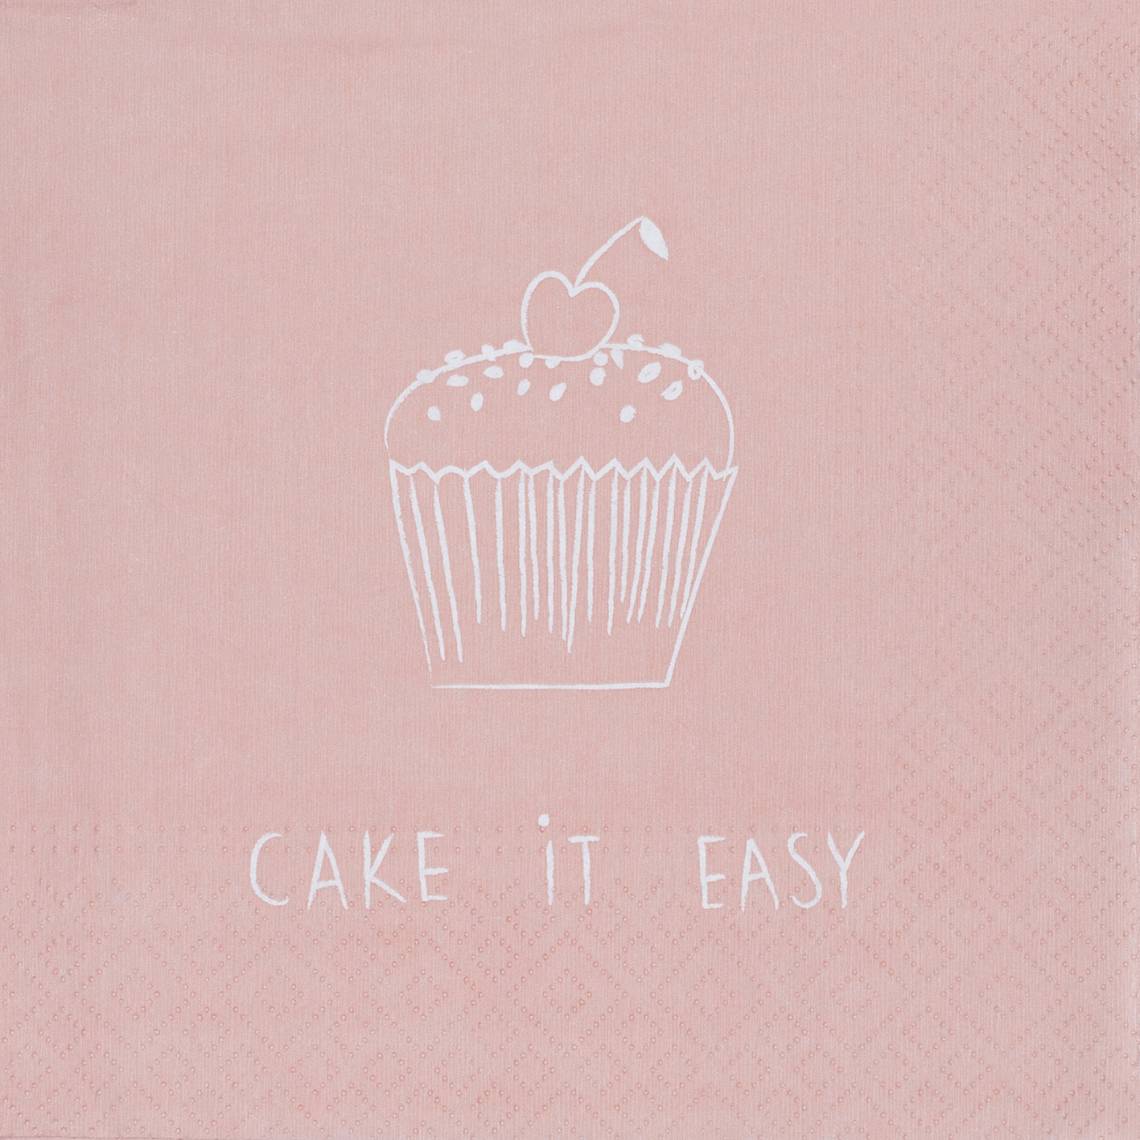 räder - Serviette Cake it easy, 33 x 33 cm